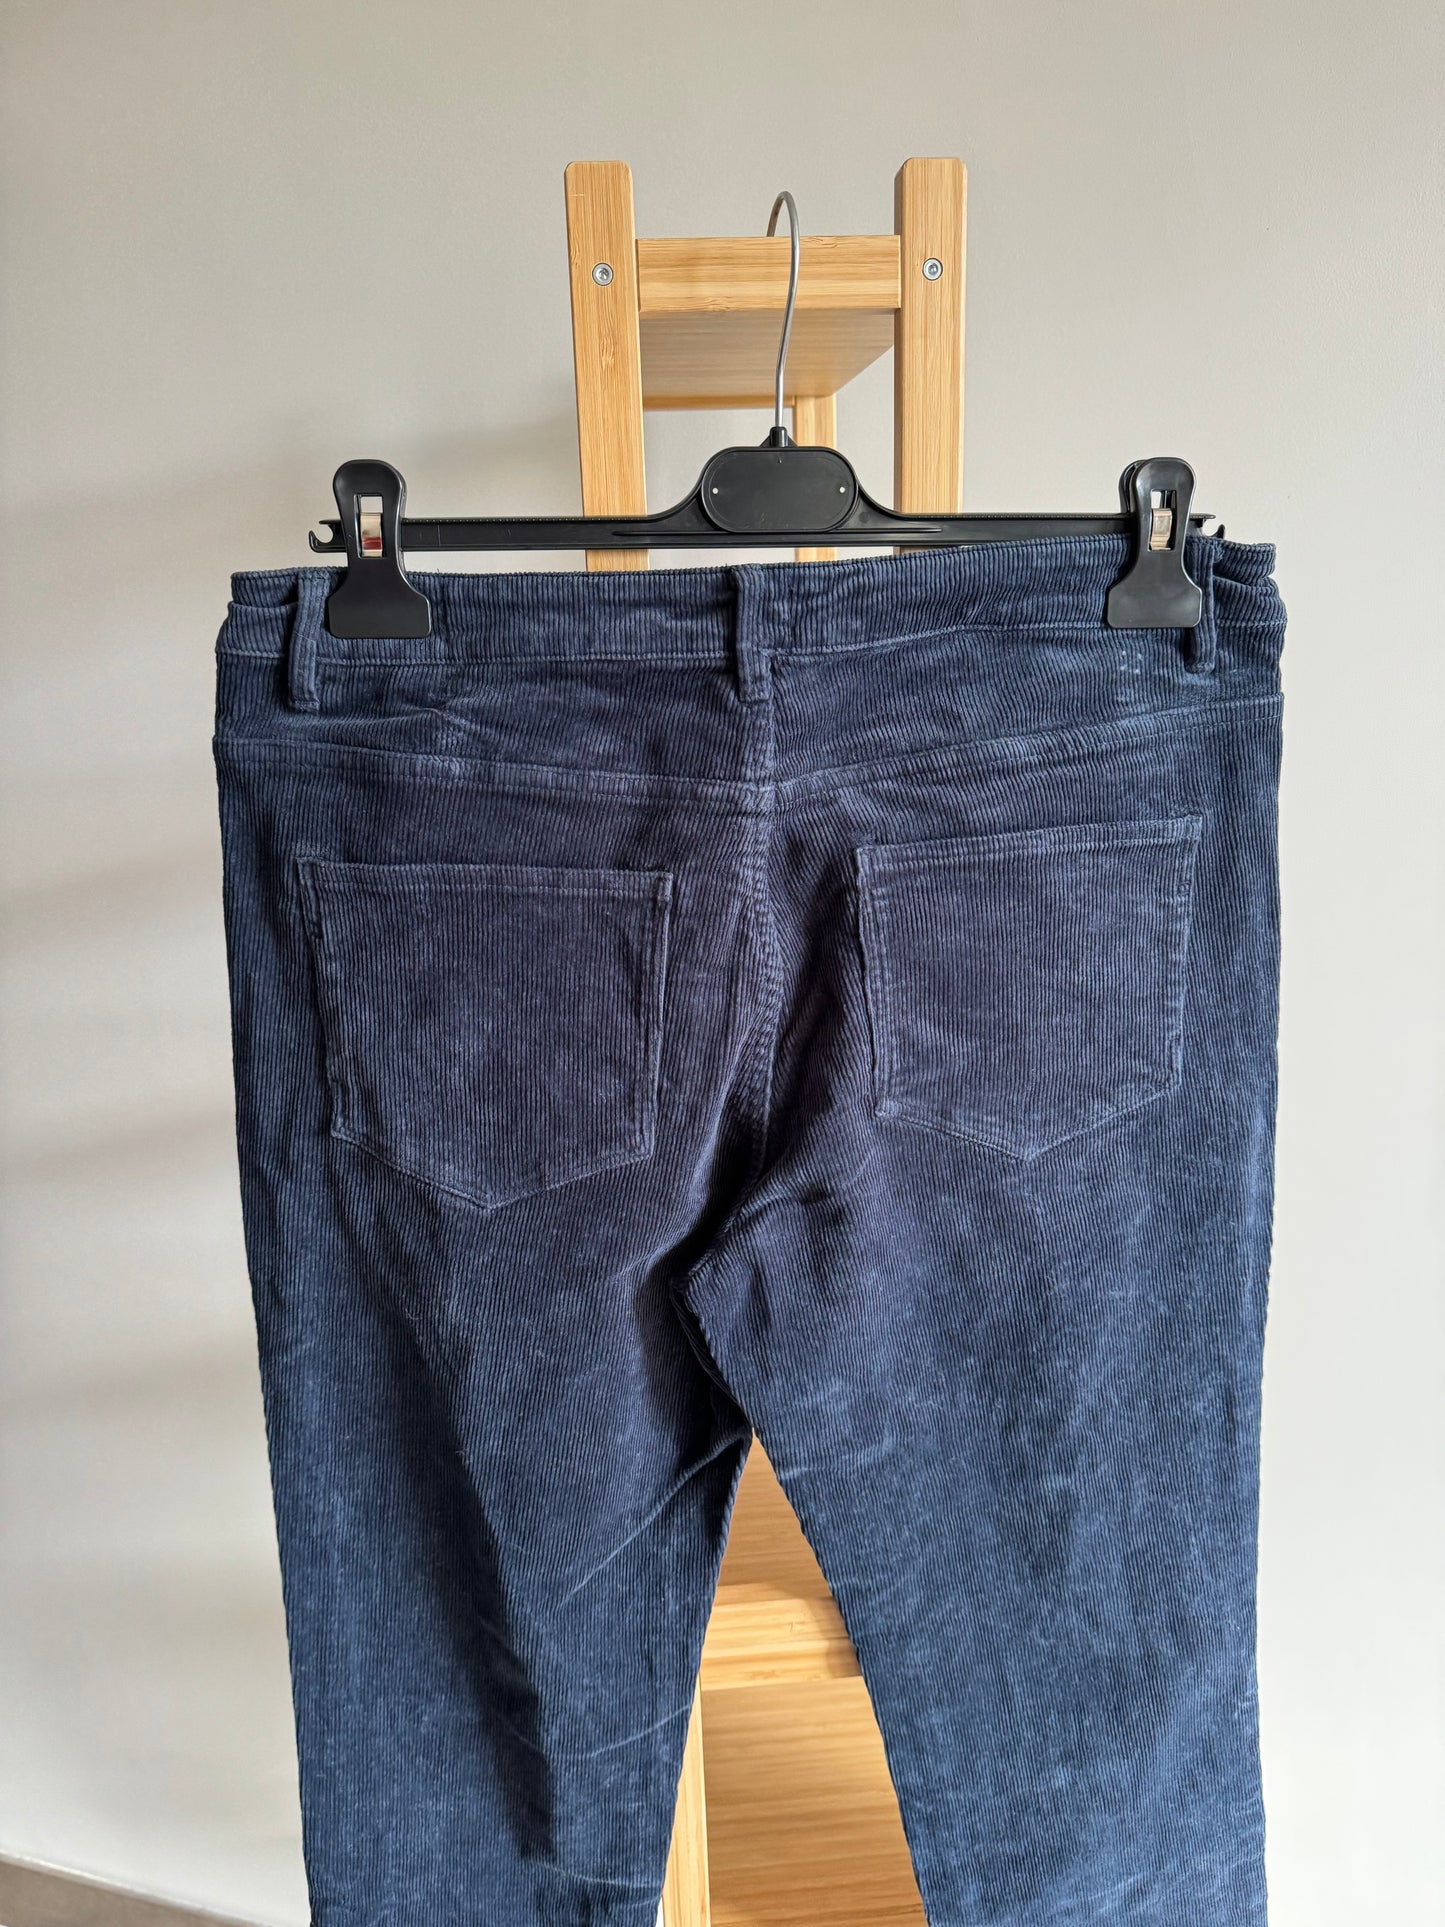 Pantalon Promod « Lucien » côtelé Taille 38